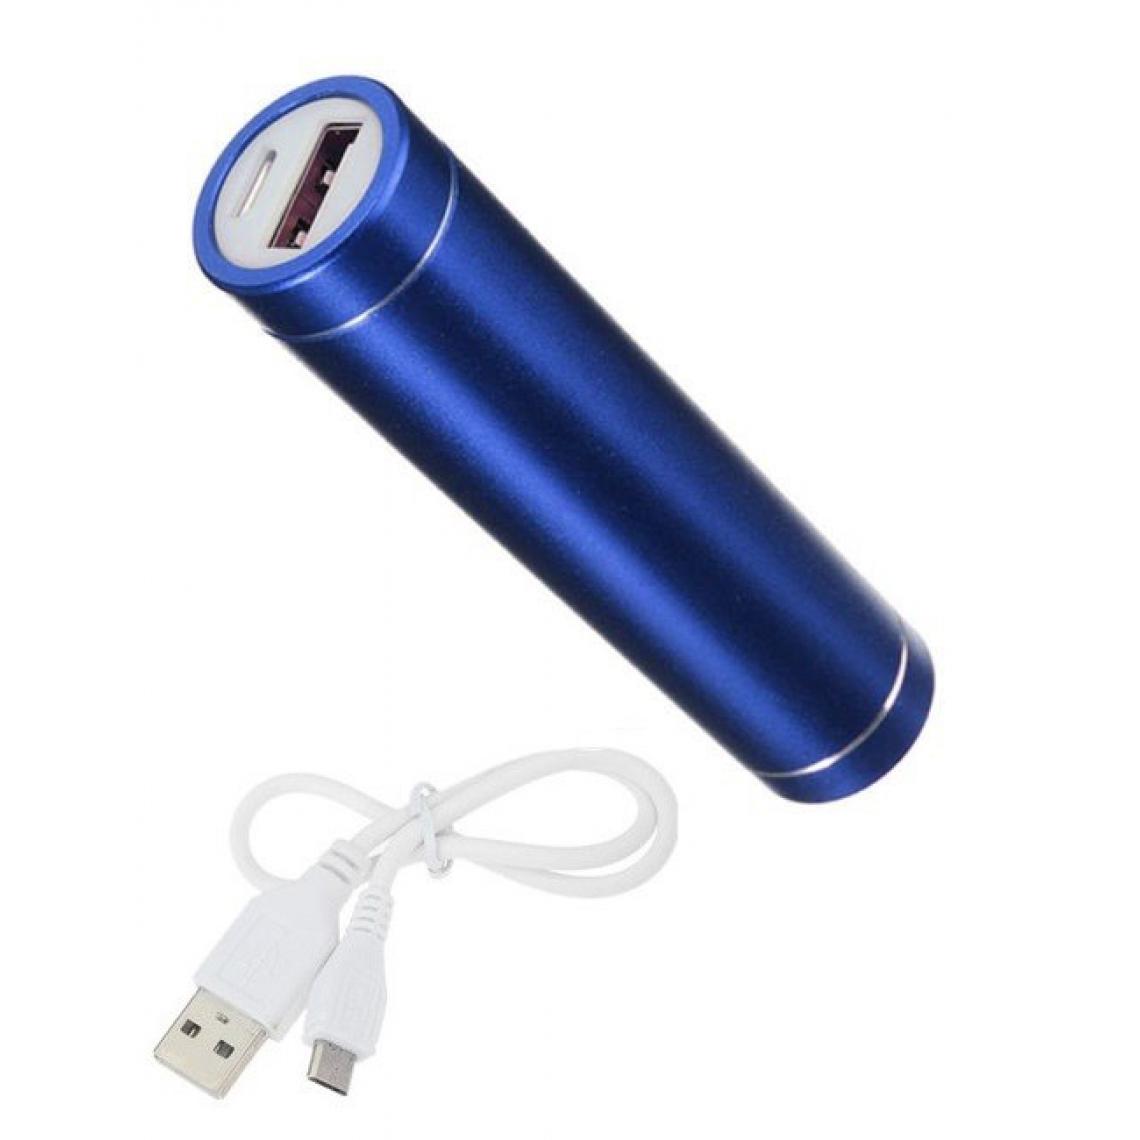 Shot - Batterie Chargeur Externe pour SONY Xperia 1 Power Bank 2600mAh avec Cable USB/Mirco USB Secours Telephone (BLEU) - Chargeur secteur téléphone